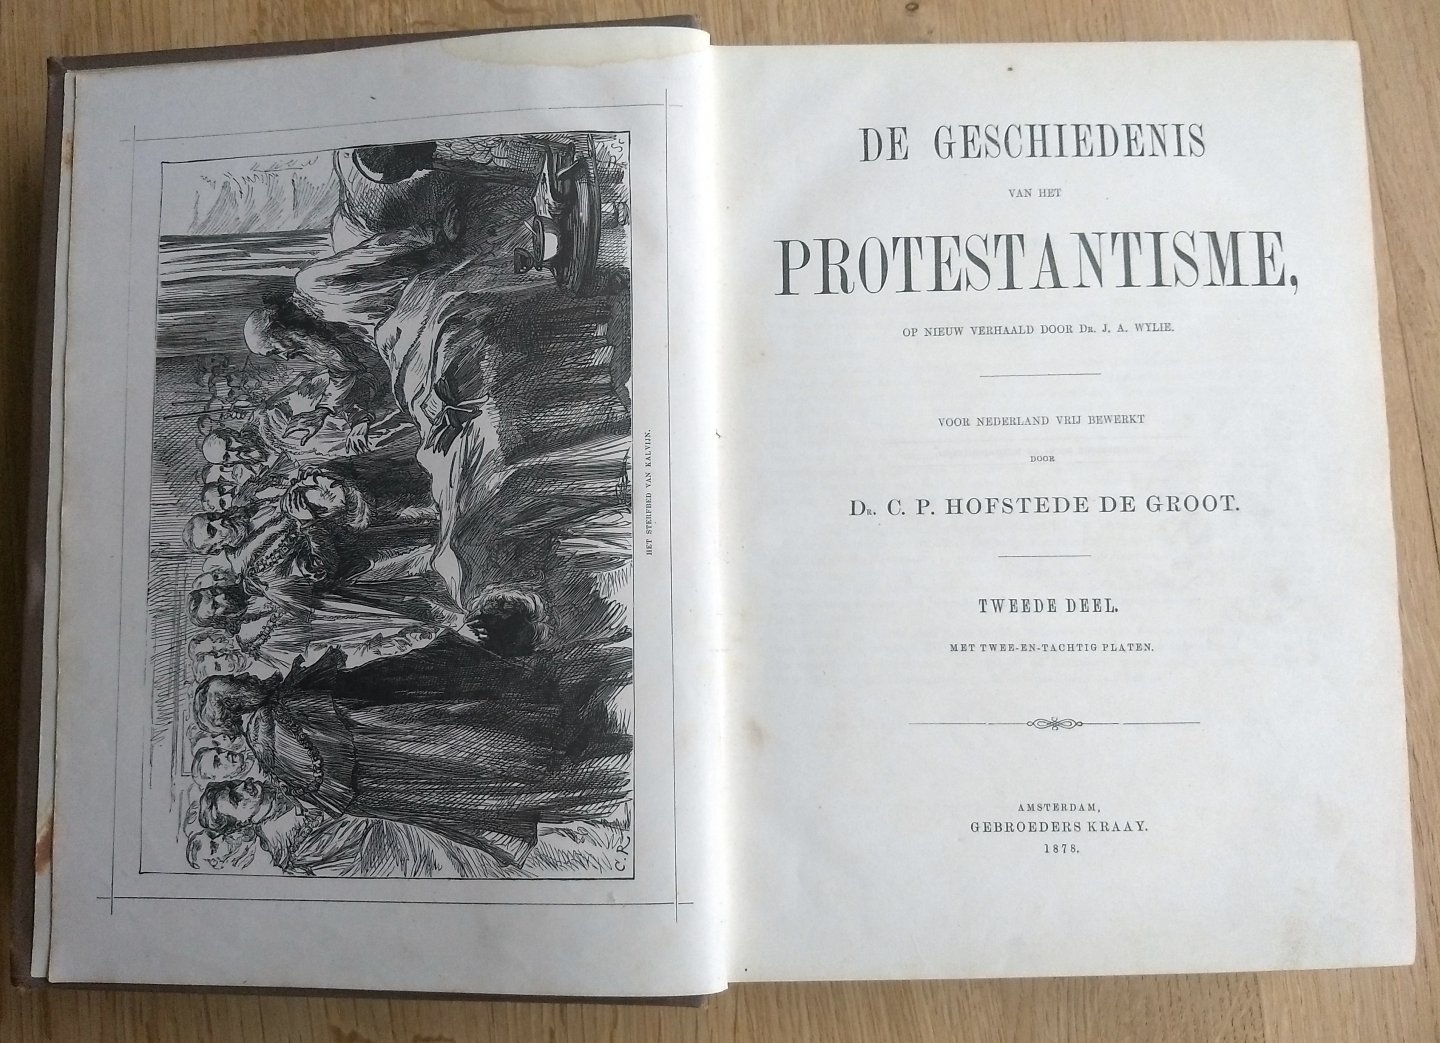 C.P Hofstede de Groot en J.A. Wylie - GESCHIEDENIS VAN HET PROTESTANTISME ( 2 delen) - geïllustreerd - Voor Nederland vrij bewerkt door Dr. C. P. Hofstede de Groot  Geïllustreerd